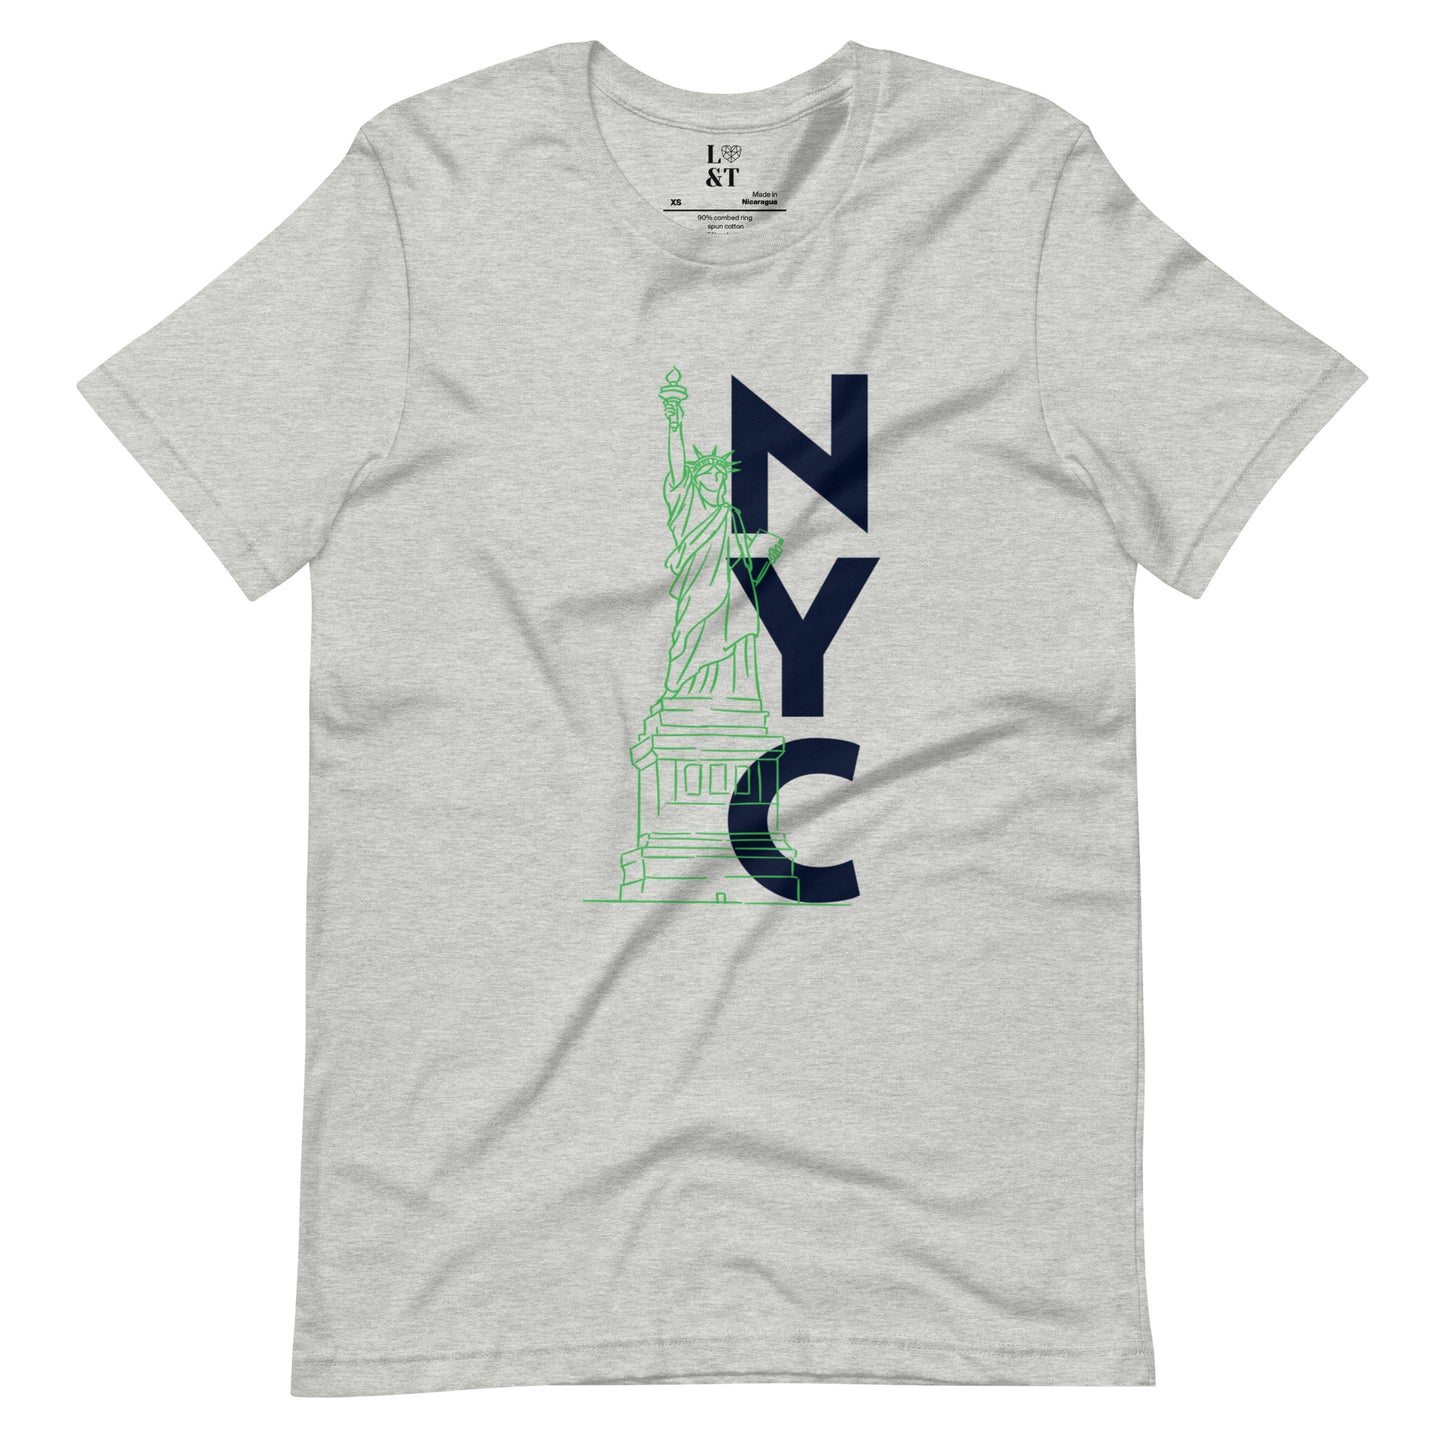 NYC Unisex T-Shirt